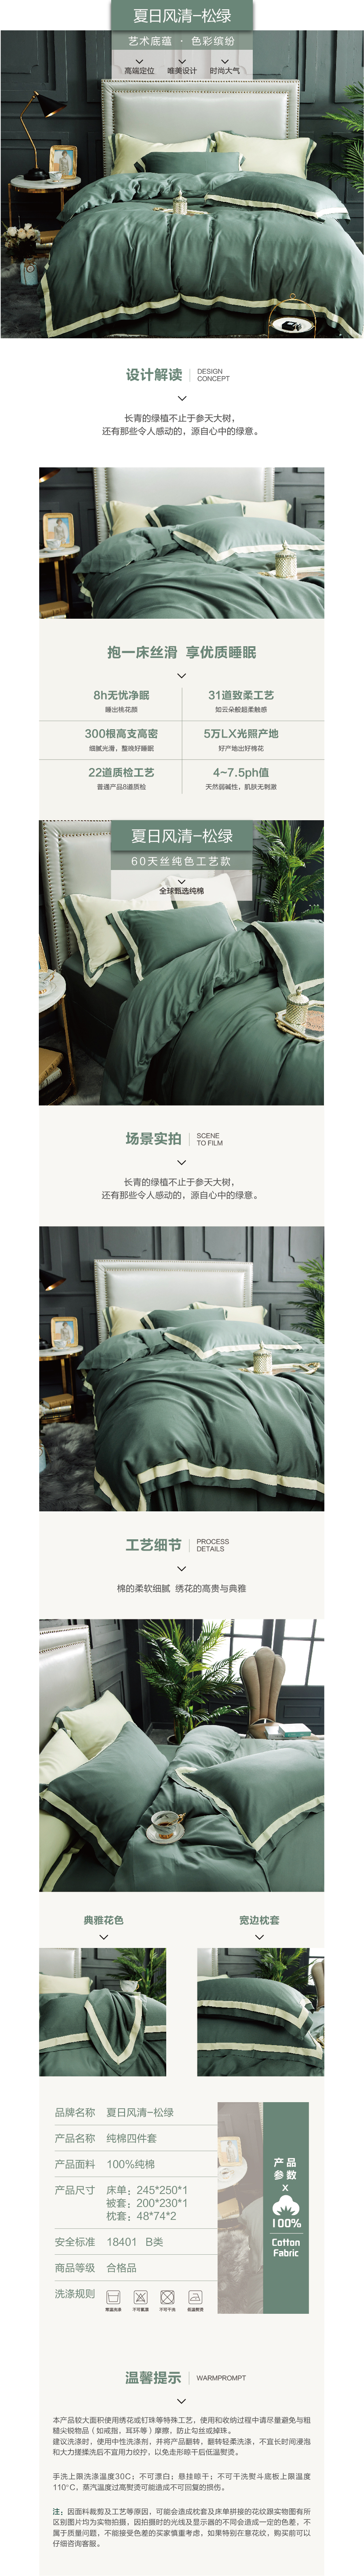 床上用品 纯棉四件套 蕾丝工艺 60天丝纯色工艺系列 松绿